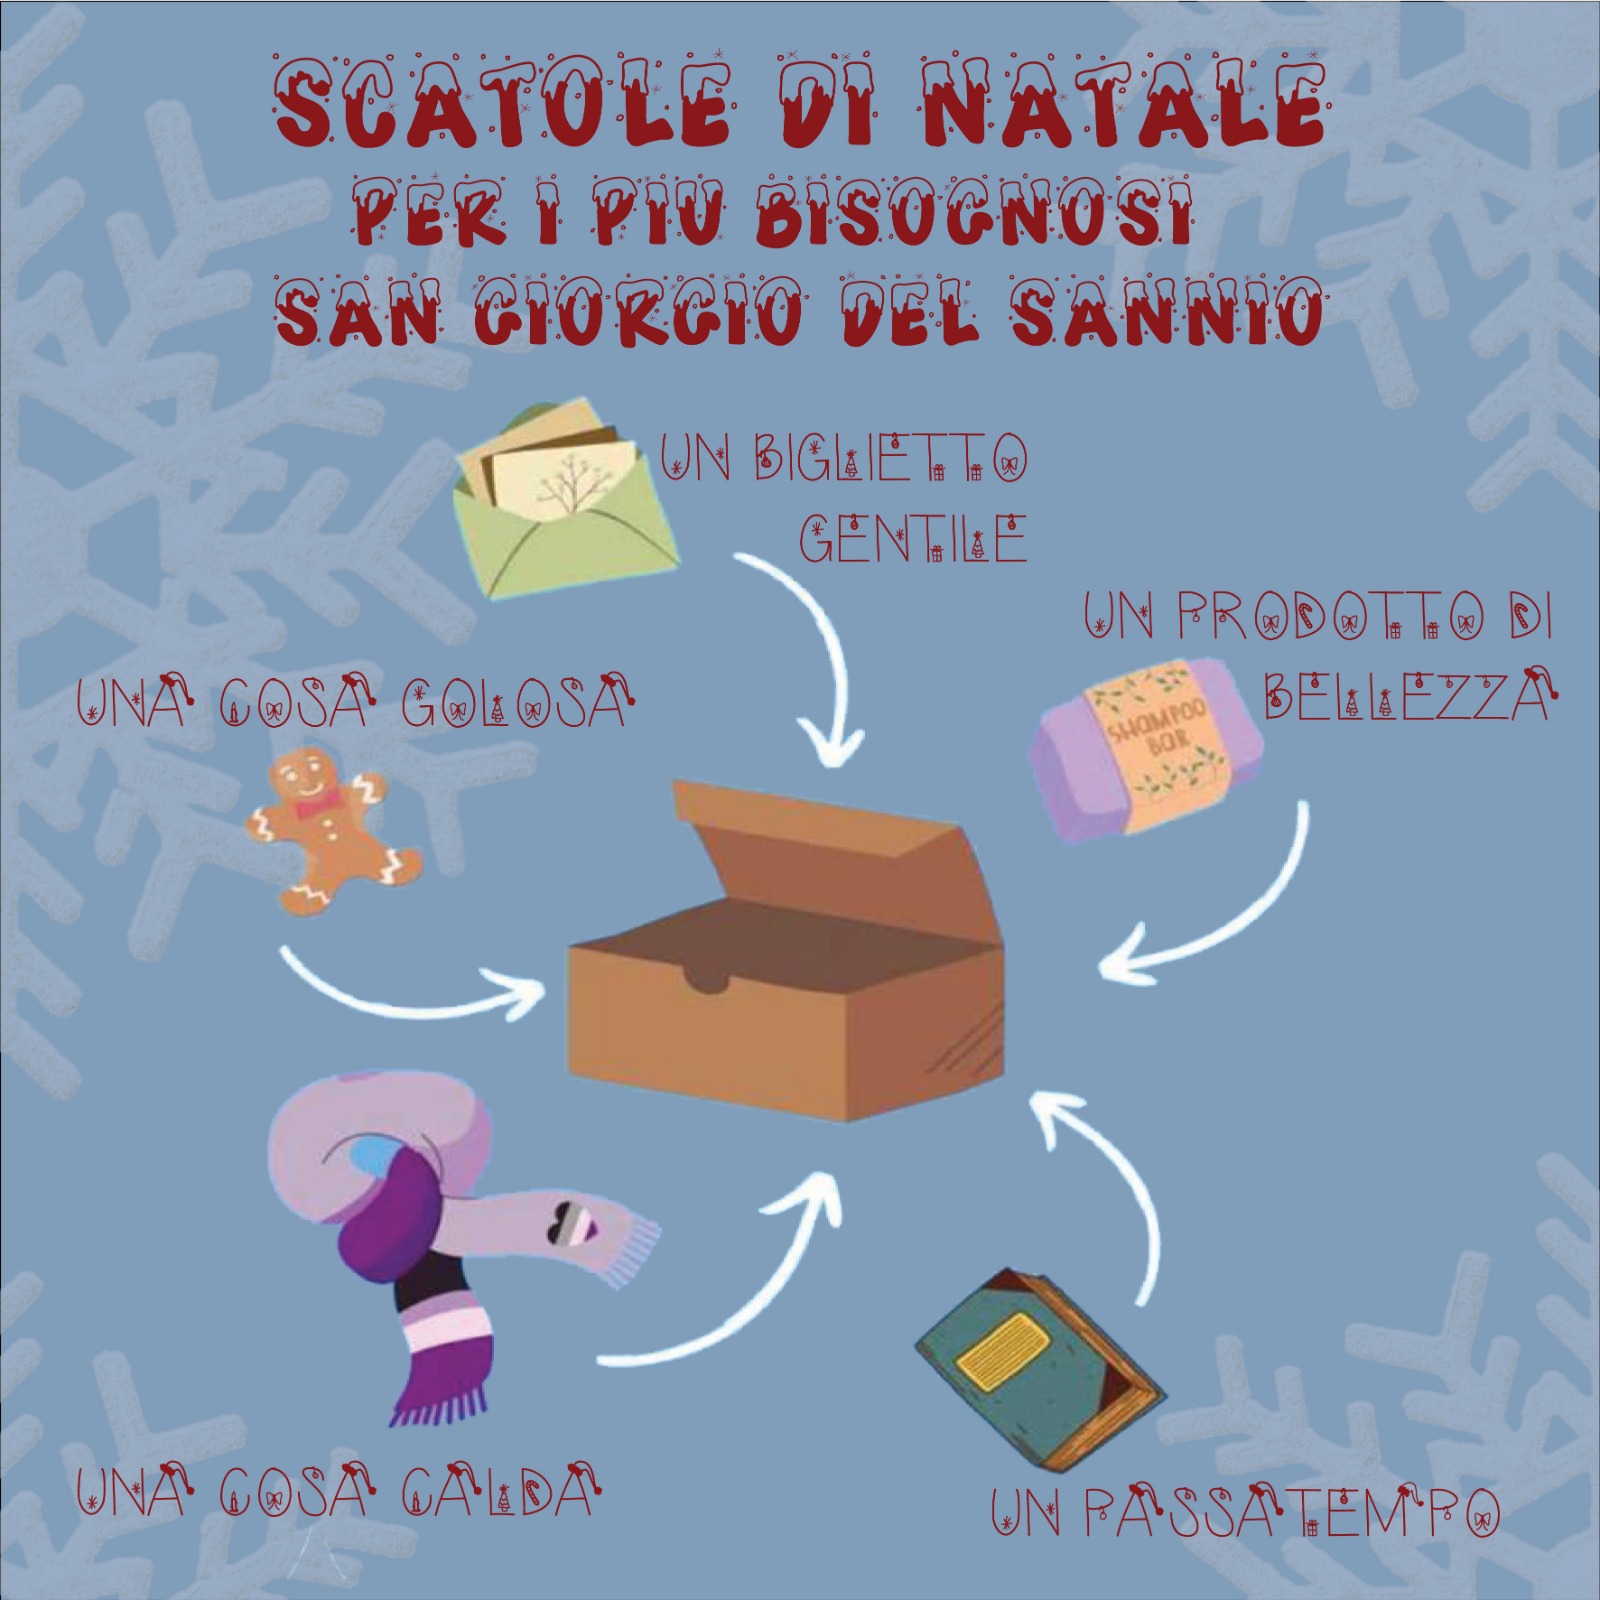 ‘Scatole di Natale’, il progetto solidale a San Giorgio del Sannio